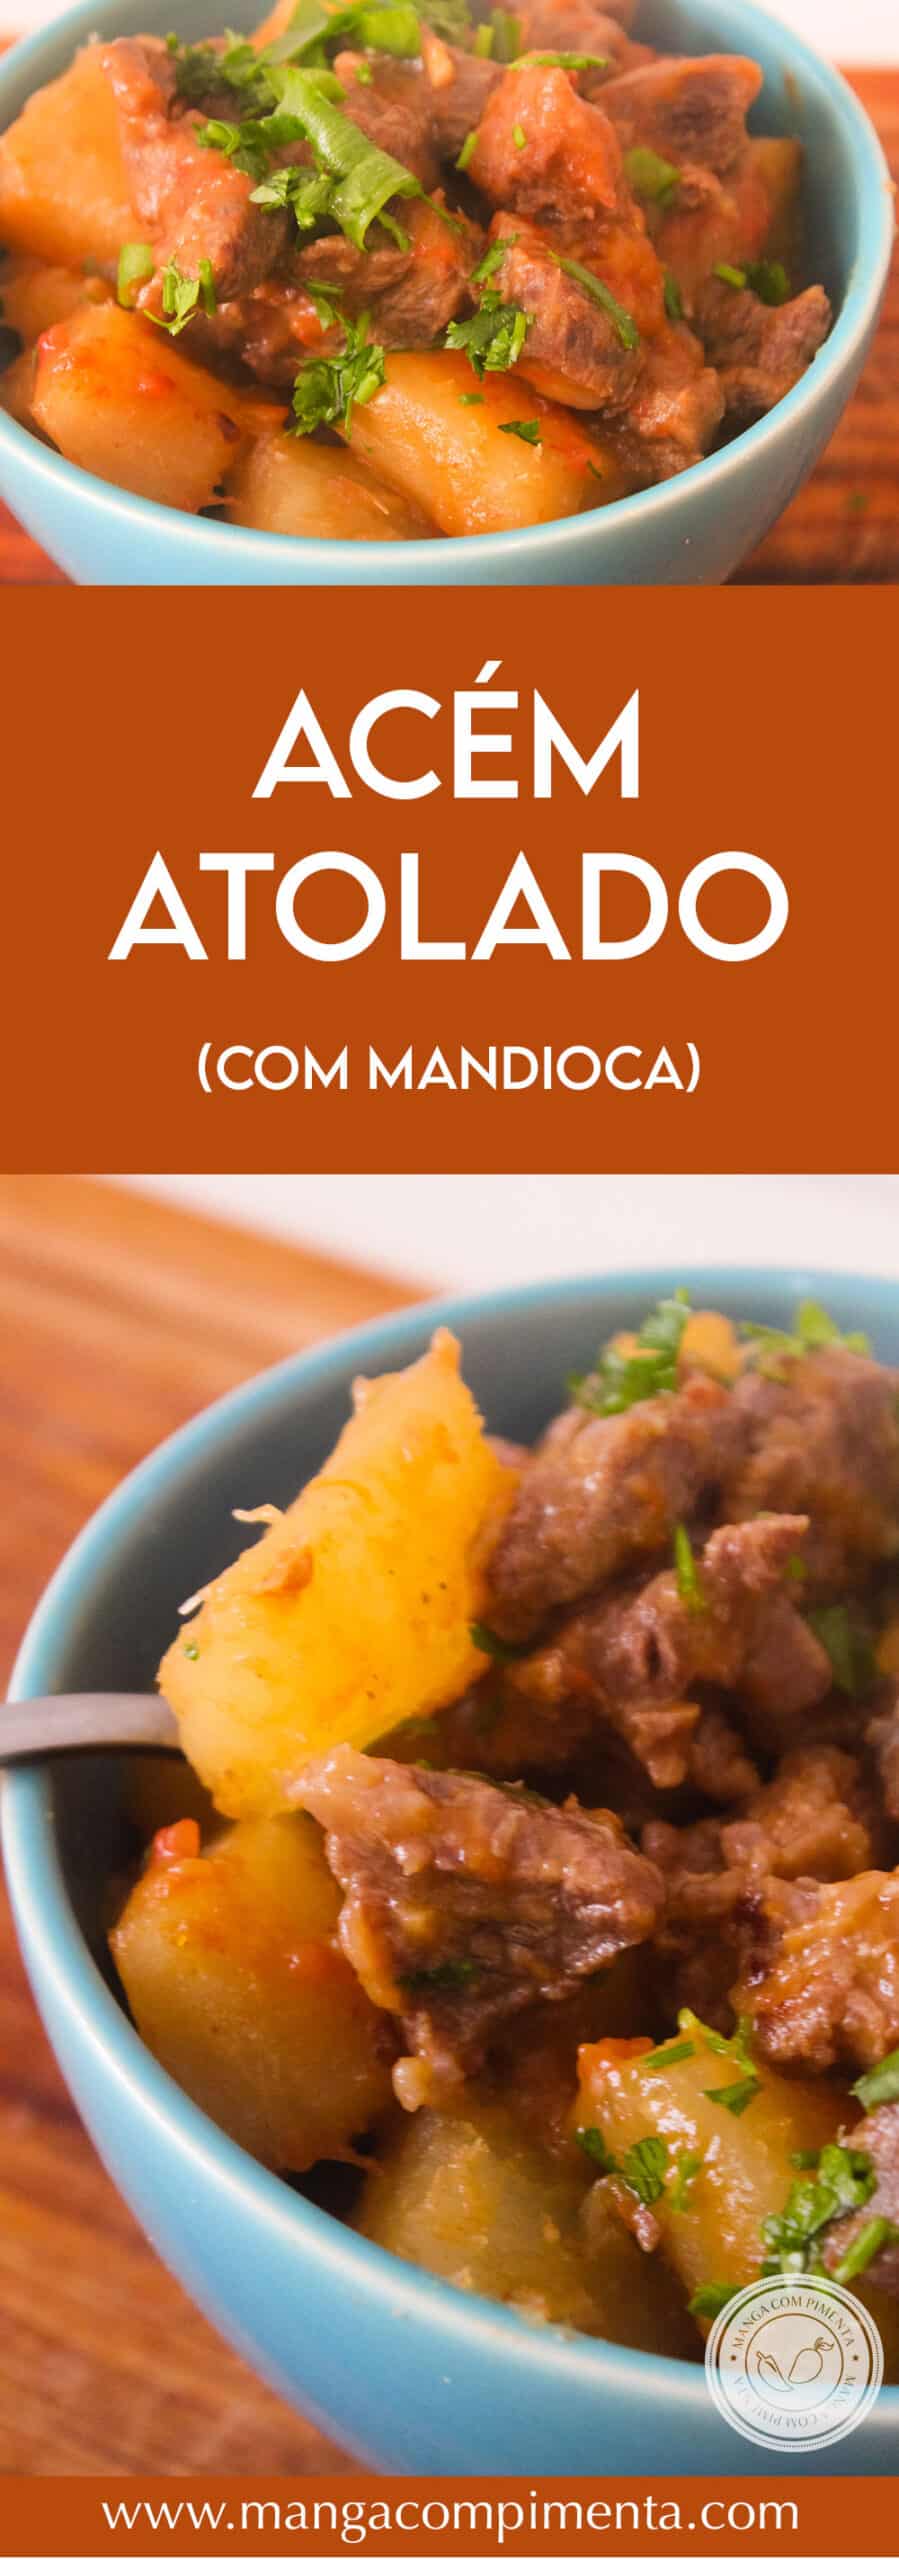 Receita de Acém Atolado | Famosa Vaca Atolada - prato preparado com carne de segunda com mandioca, prepare um prato nutritivo para a sua família em dias frios.